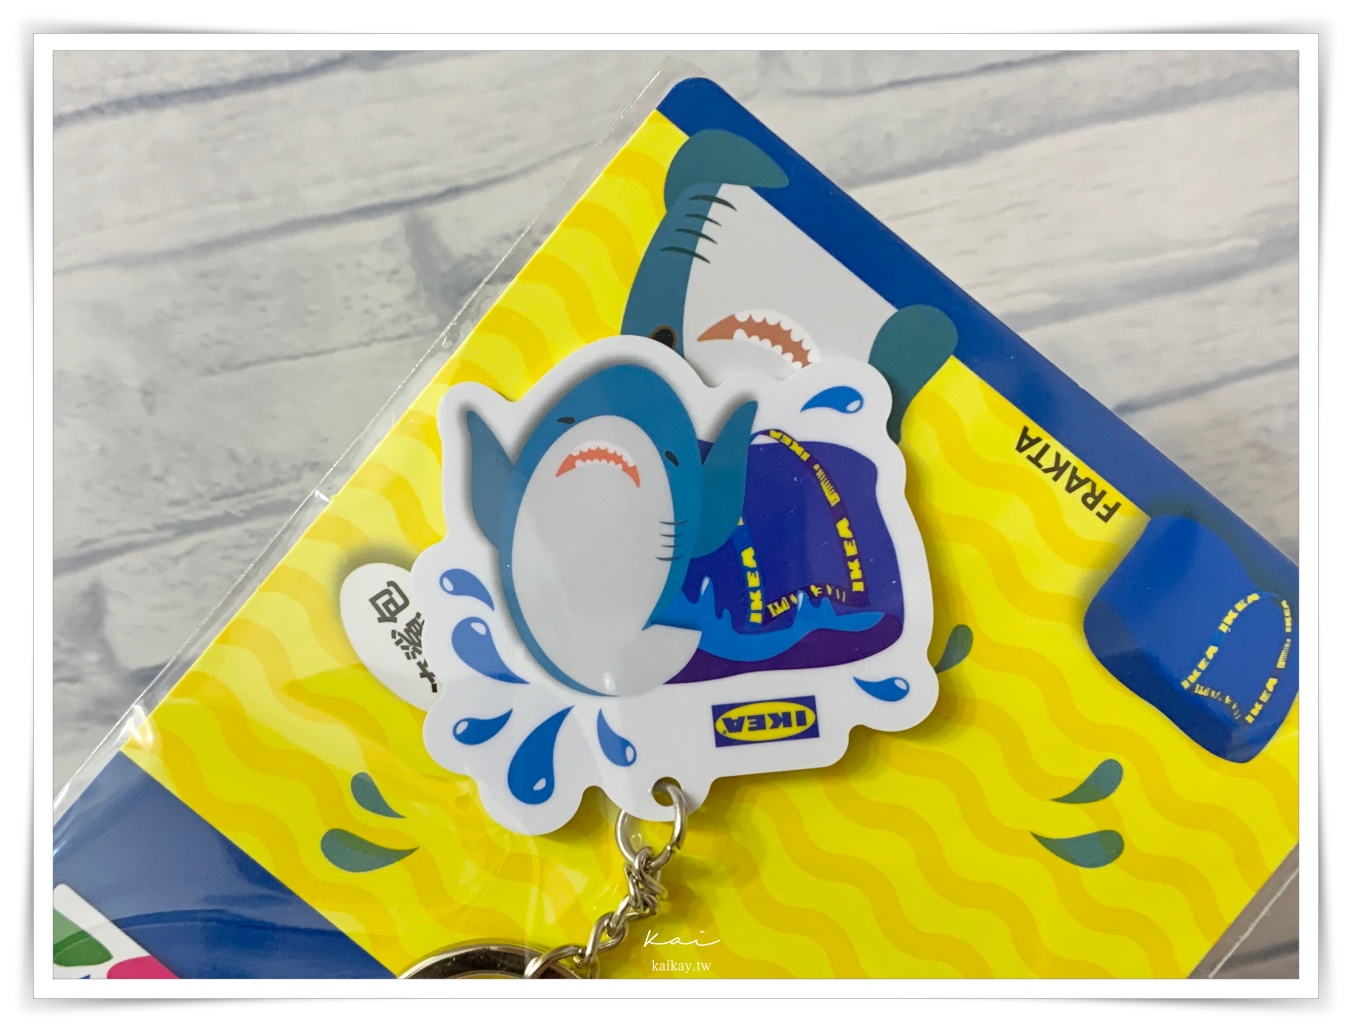 ☆【宜家】IKEA鯊魚悠遊卡重出江湖！9/16~10/11 消費抽鯊魚悠遊卡再送鯊魚口罩